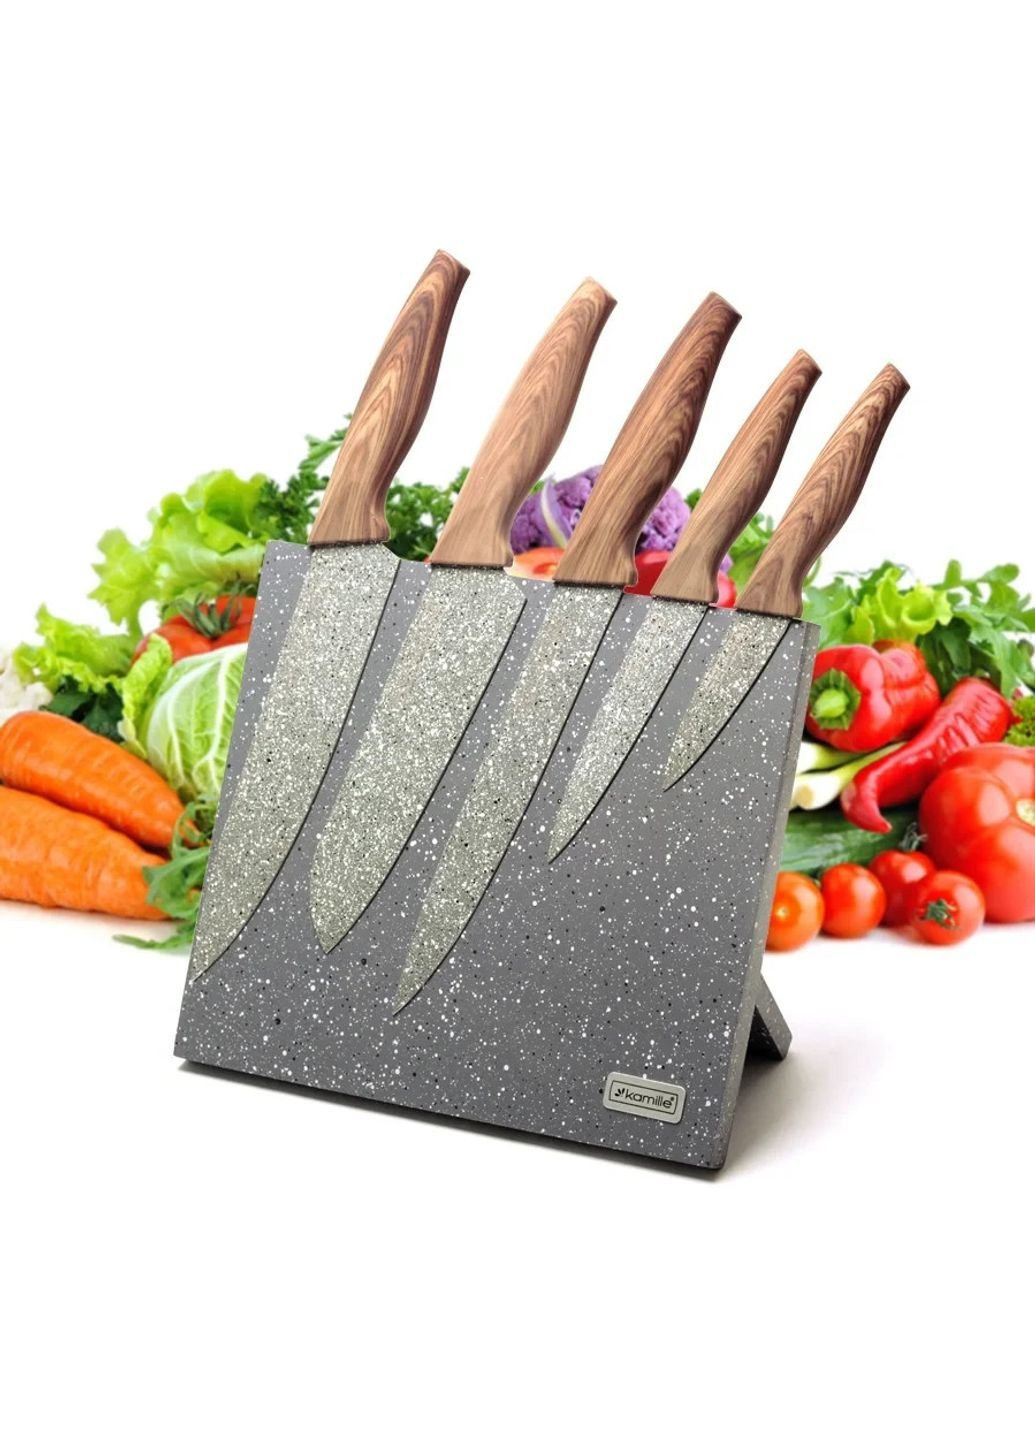 Набор кухонных ножей KM-5046 6 предметов Kamille комбинированные,